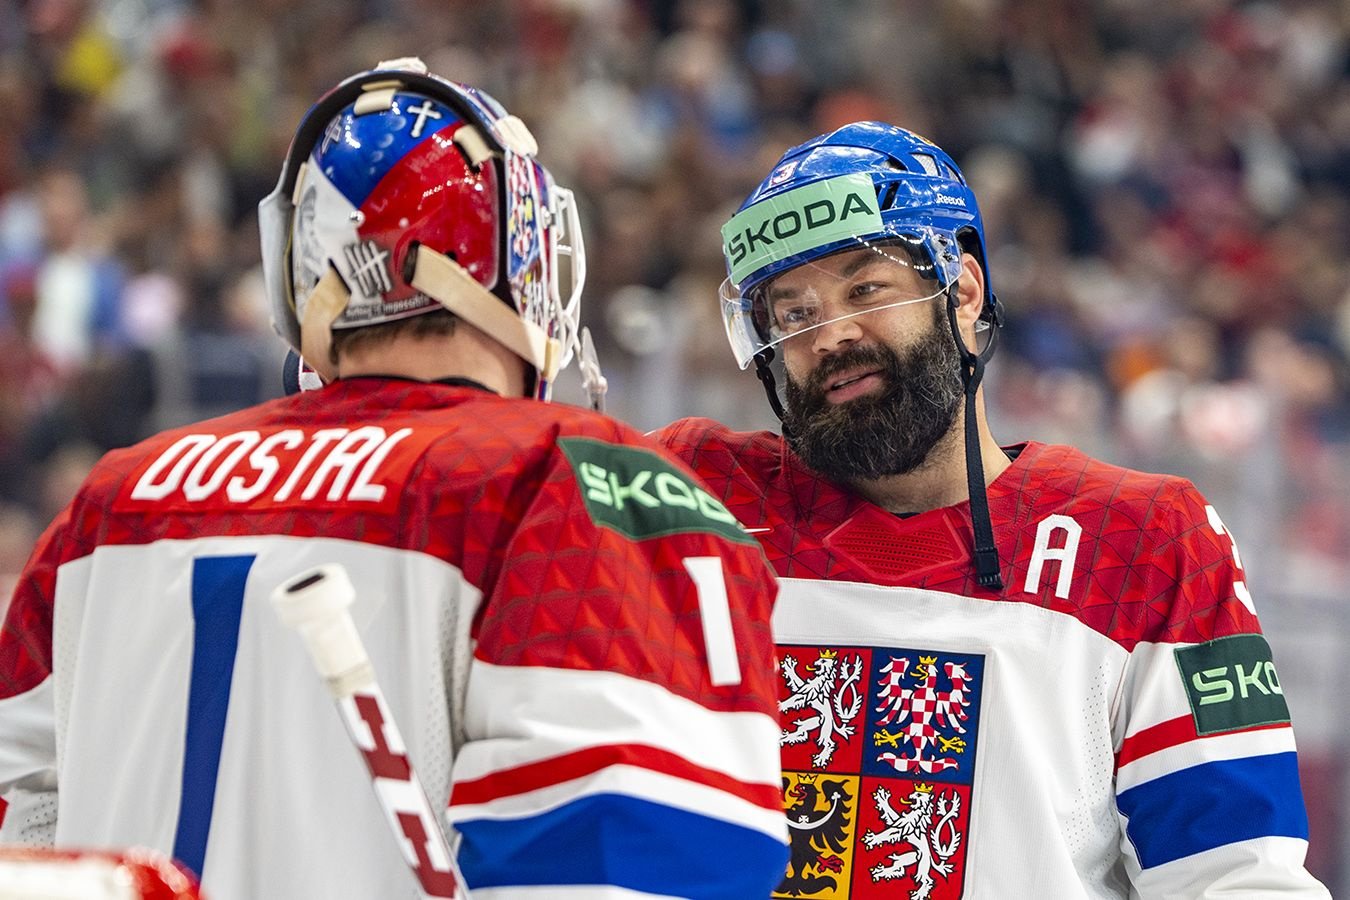 Чехия обошла Россию по количеству медалей на чемпионатах мира по хоккею